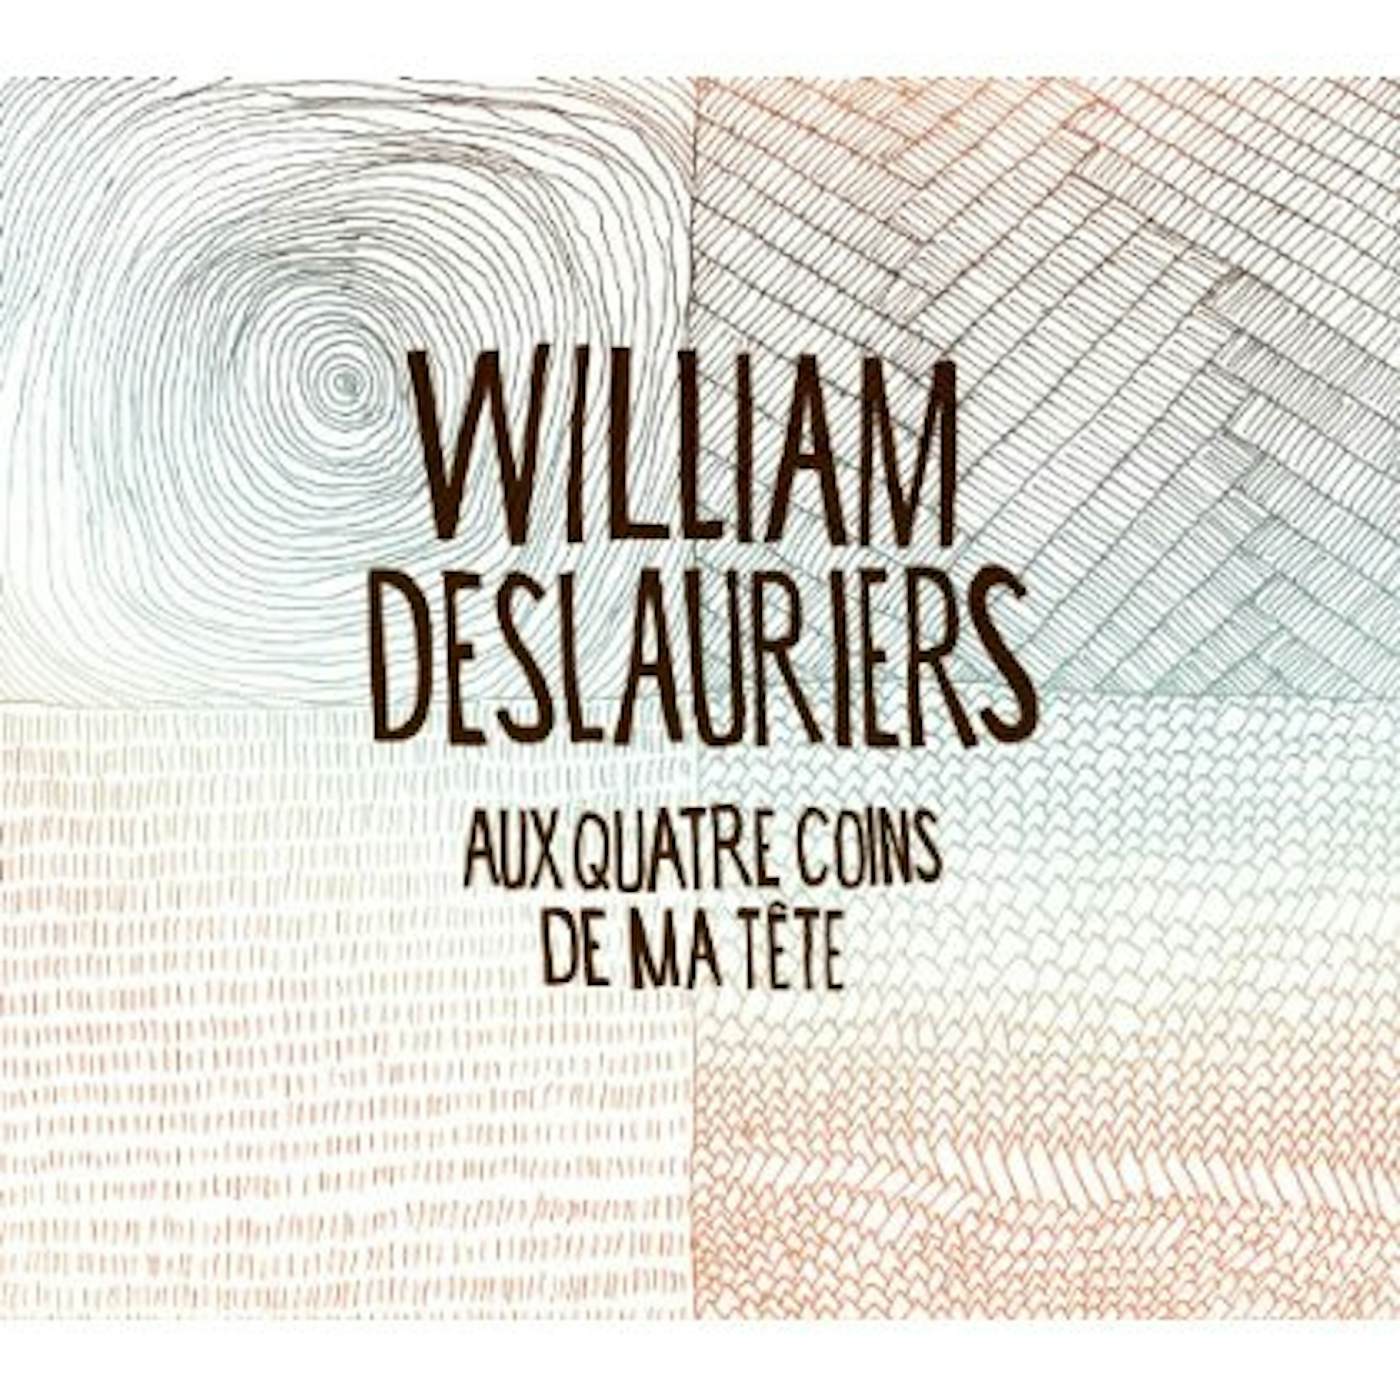 William Deslauriers AUX QUATRE COINS DE MA TETE CD